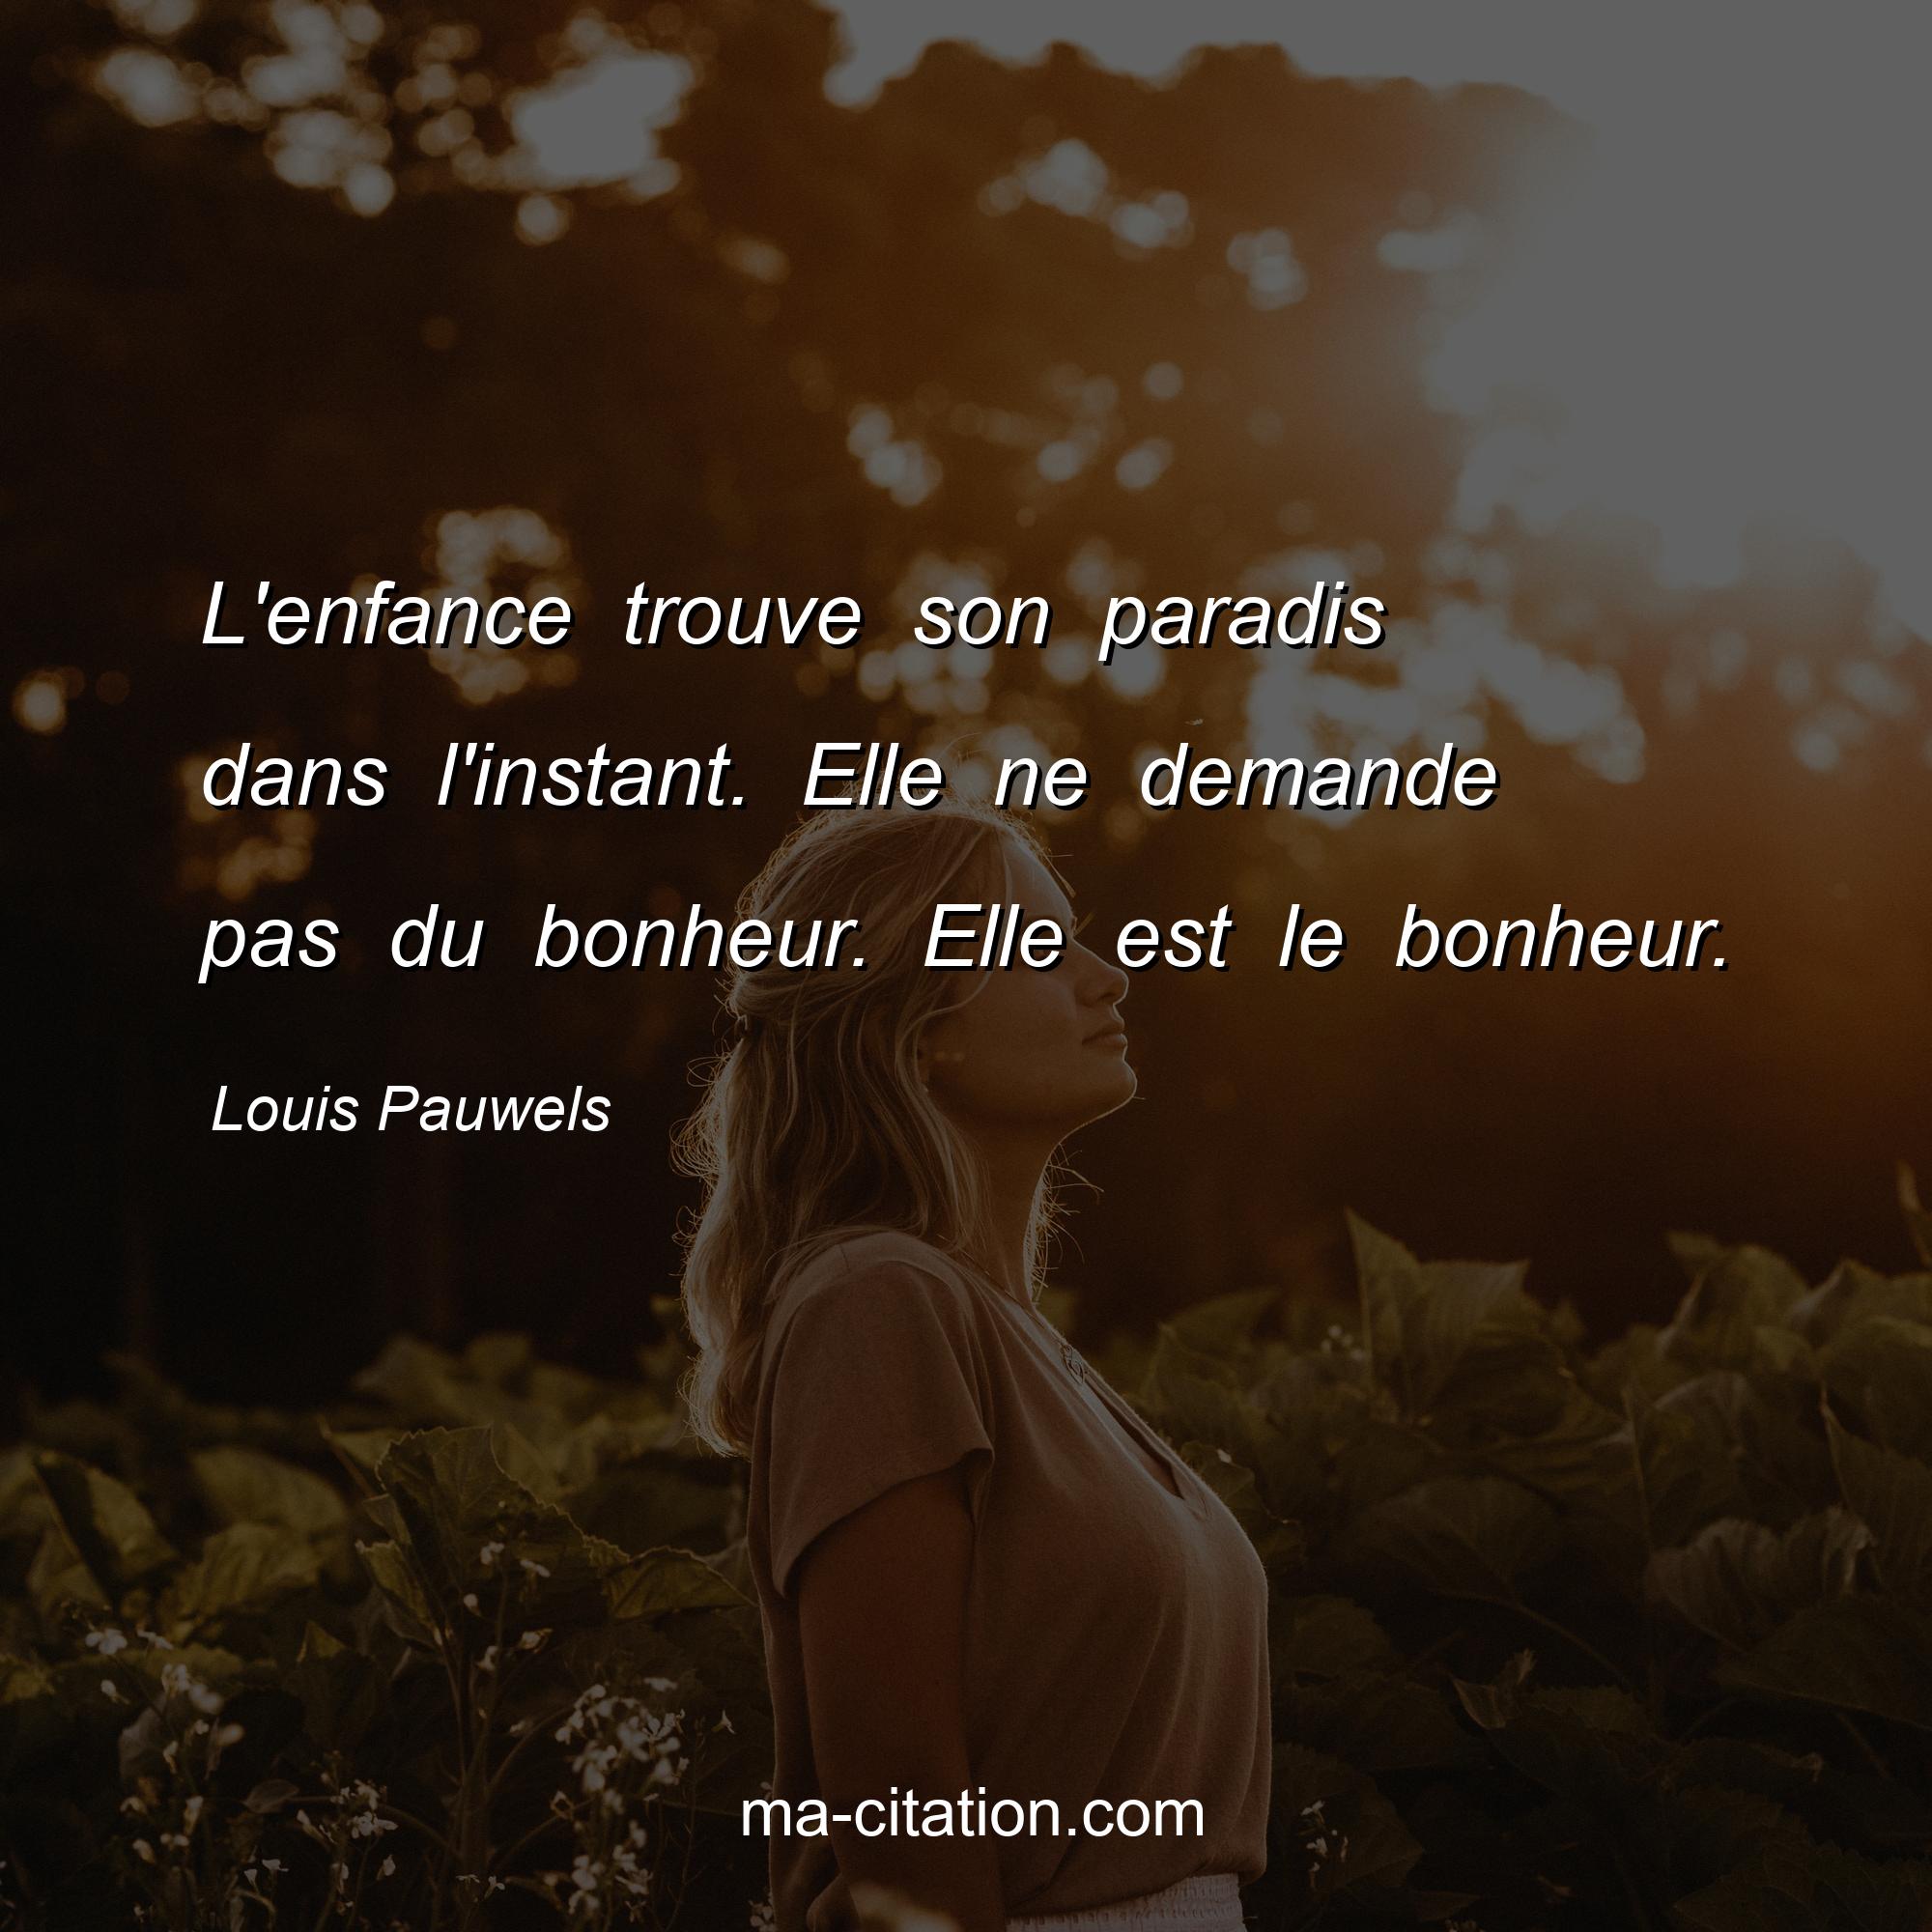 Louis Pauwels : L'enfance trouve son paradis dans l'instant. Elle ne demande pas du bonheur. Elle est le bonheur.